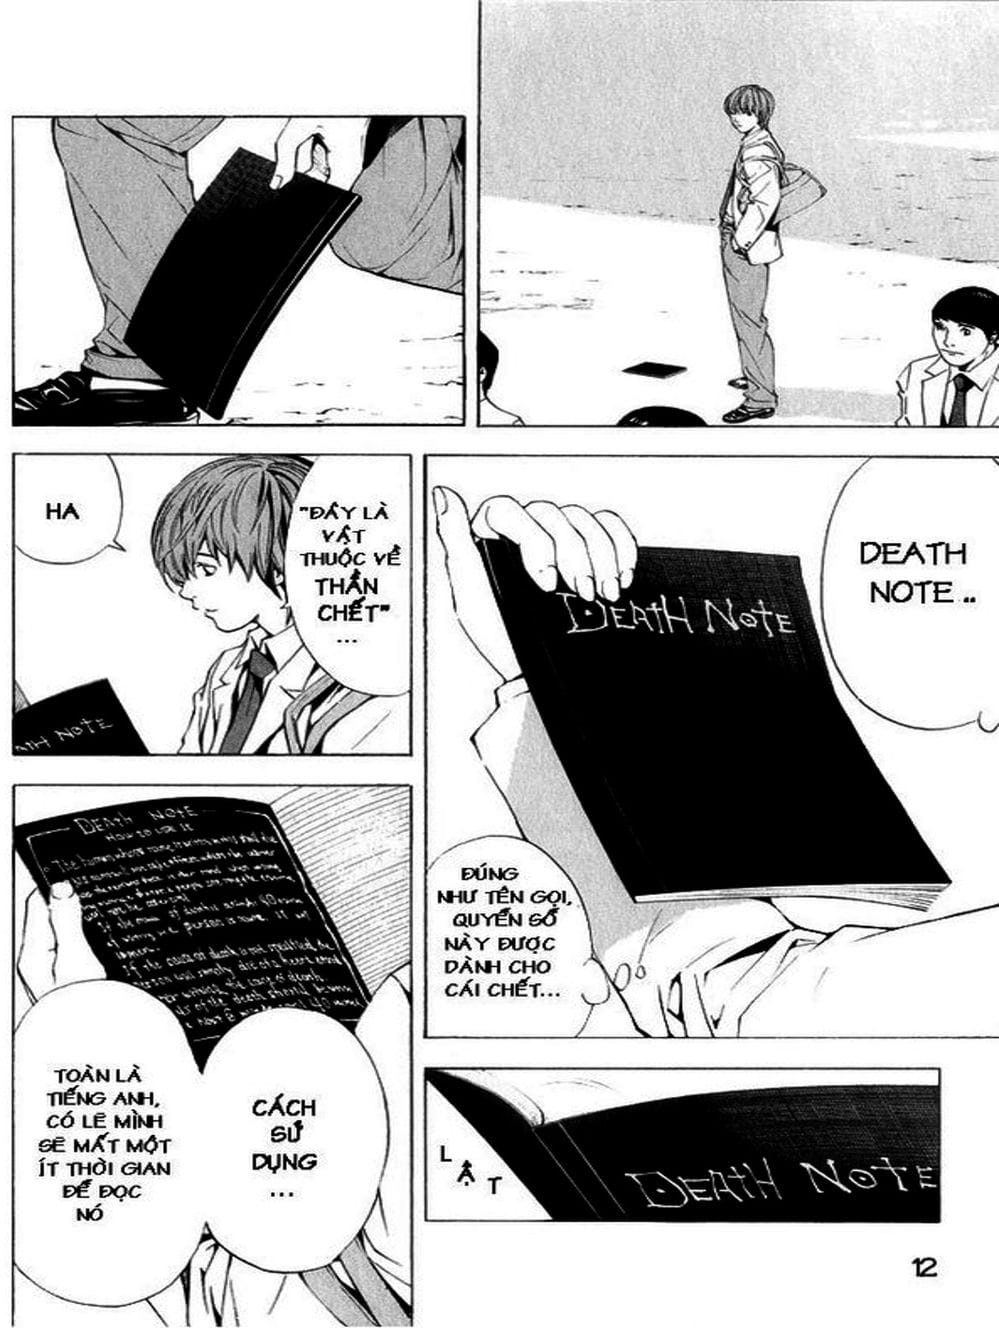 Truyện Tranh Cuốn Sổ Thiên Mệnh - Death Note trang 13